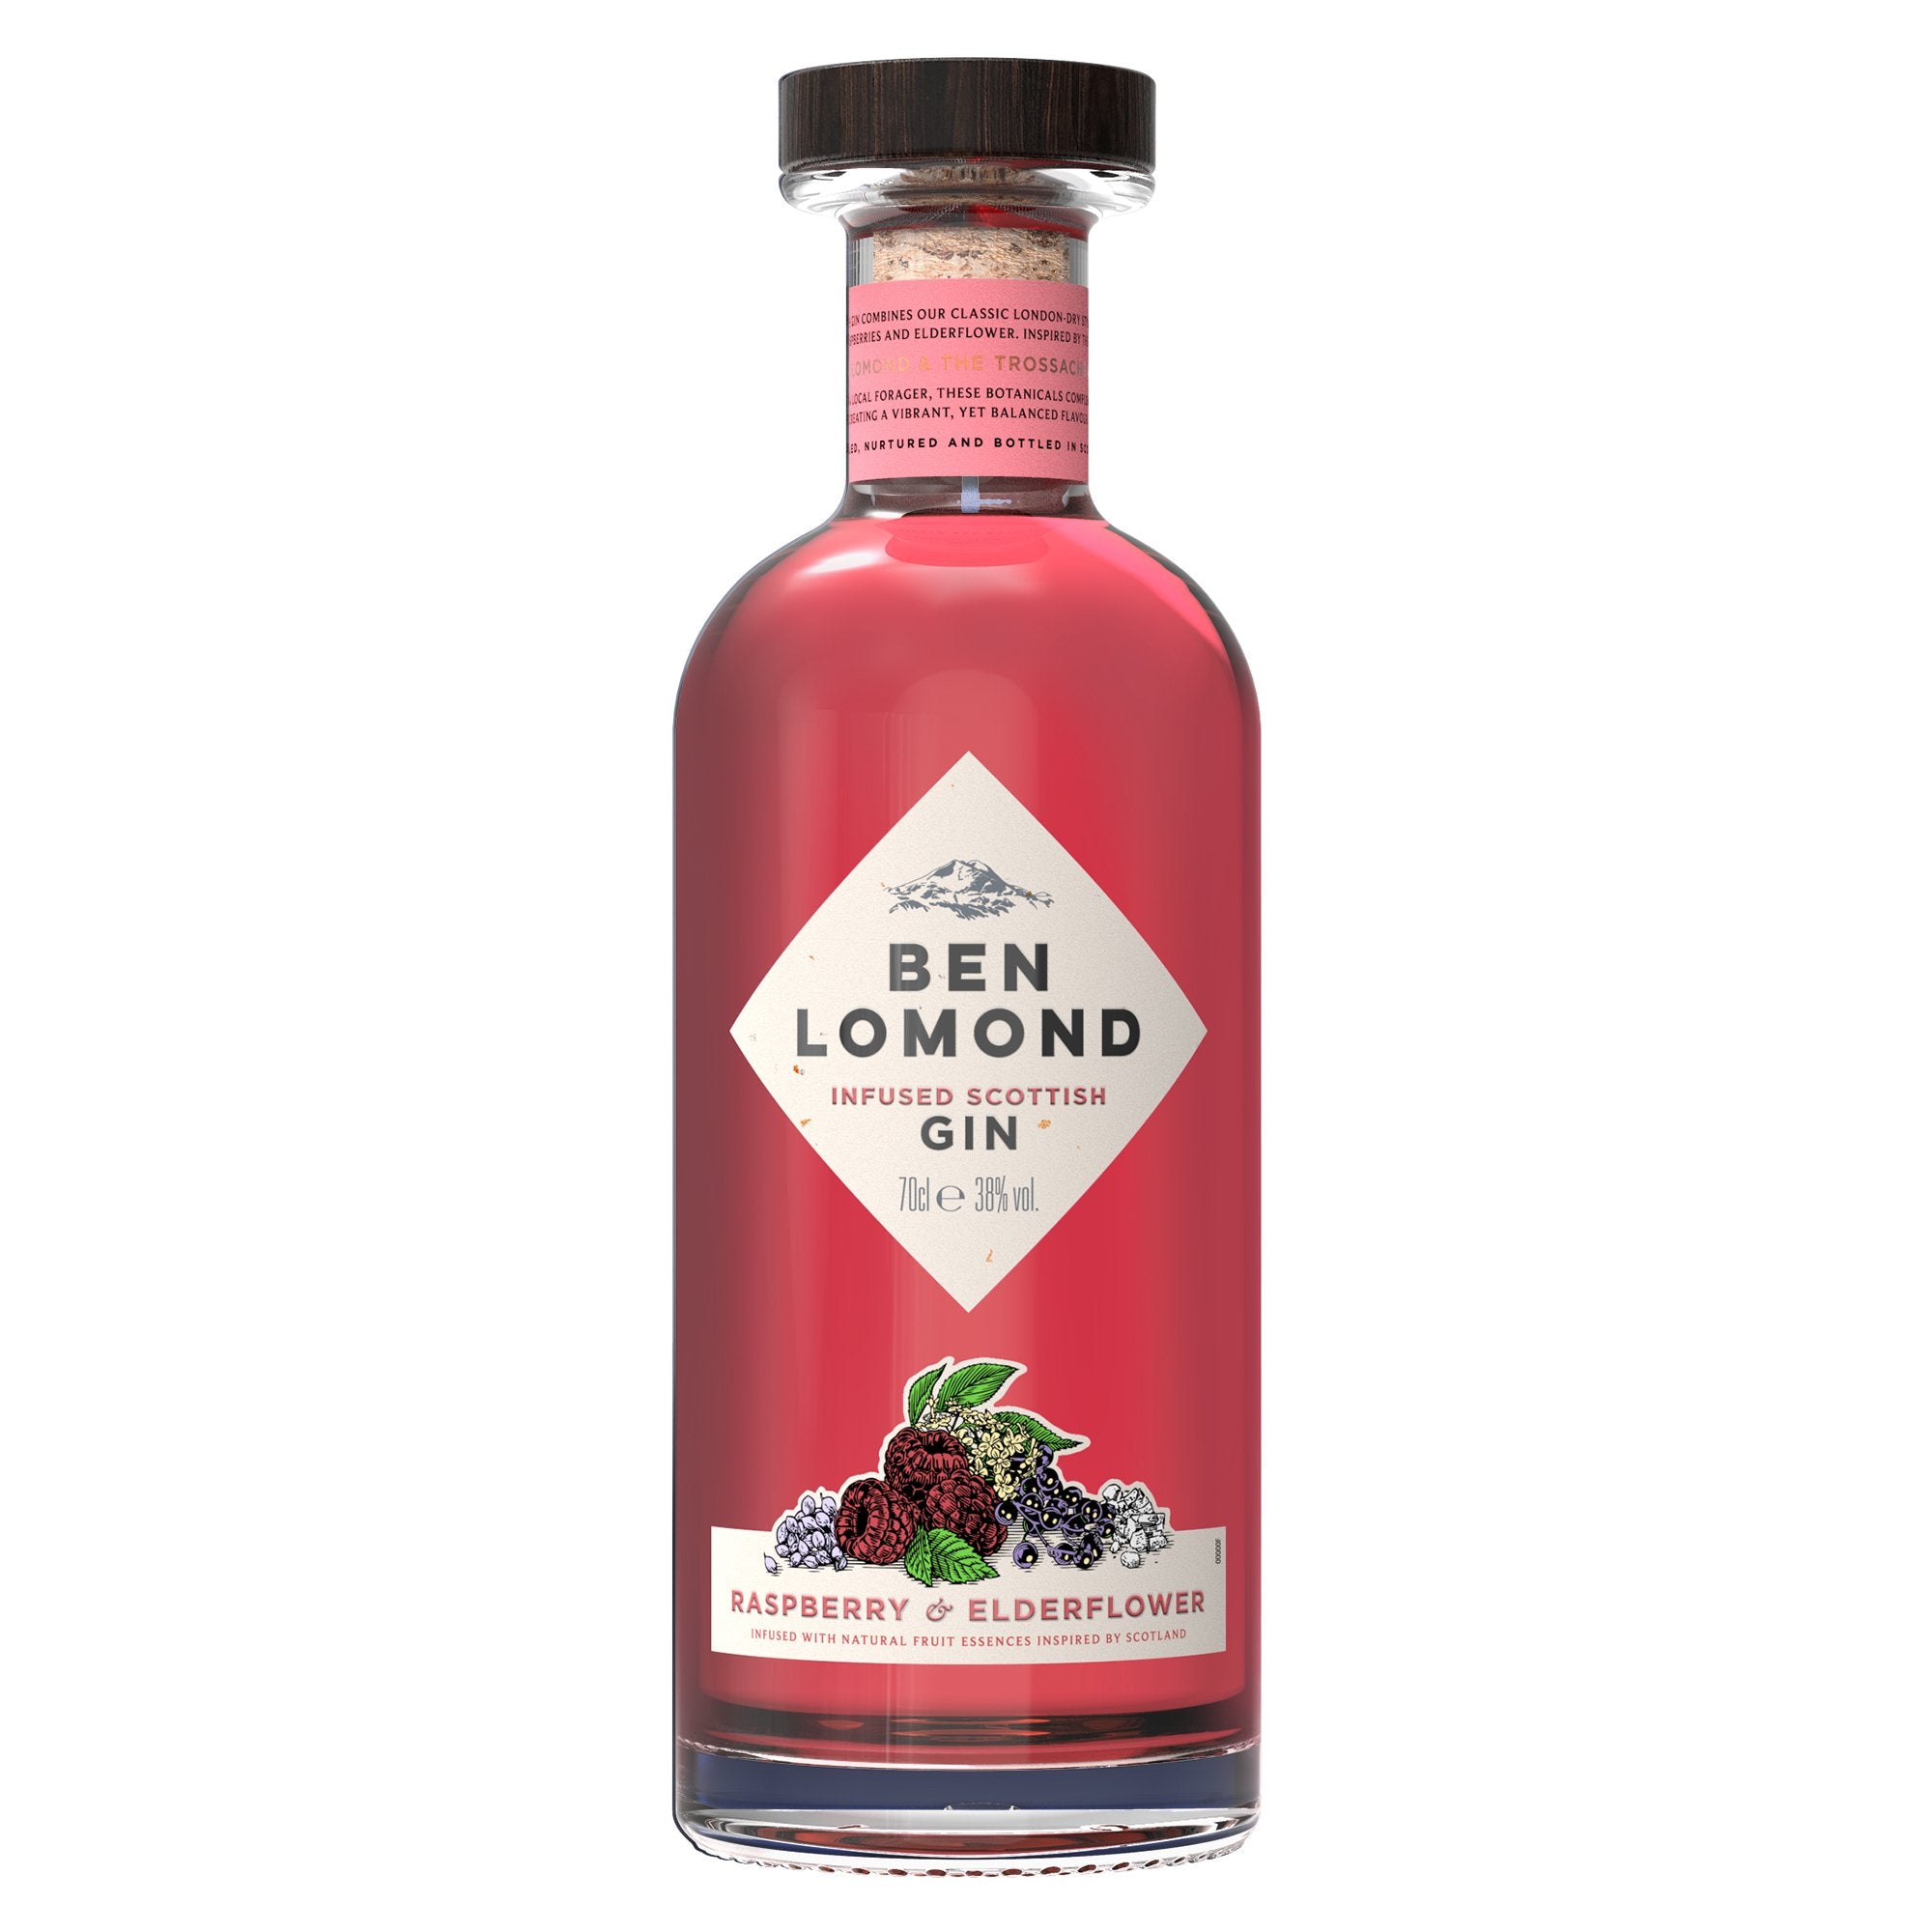 Ben Lomond Raspberry & Elderflower Gin - Loch Lomond Group